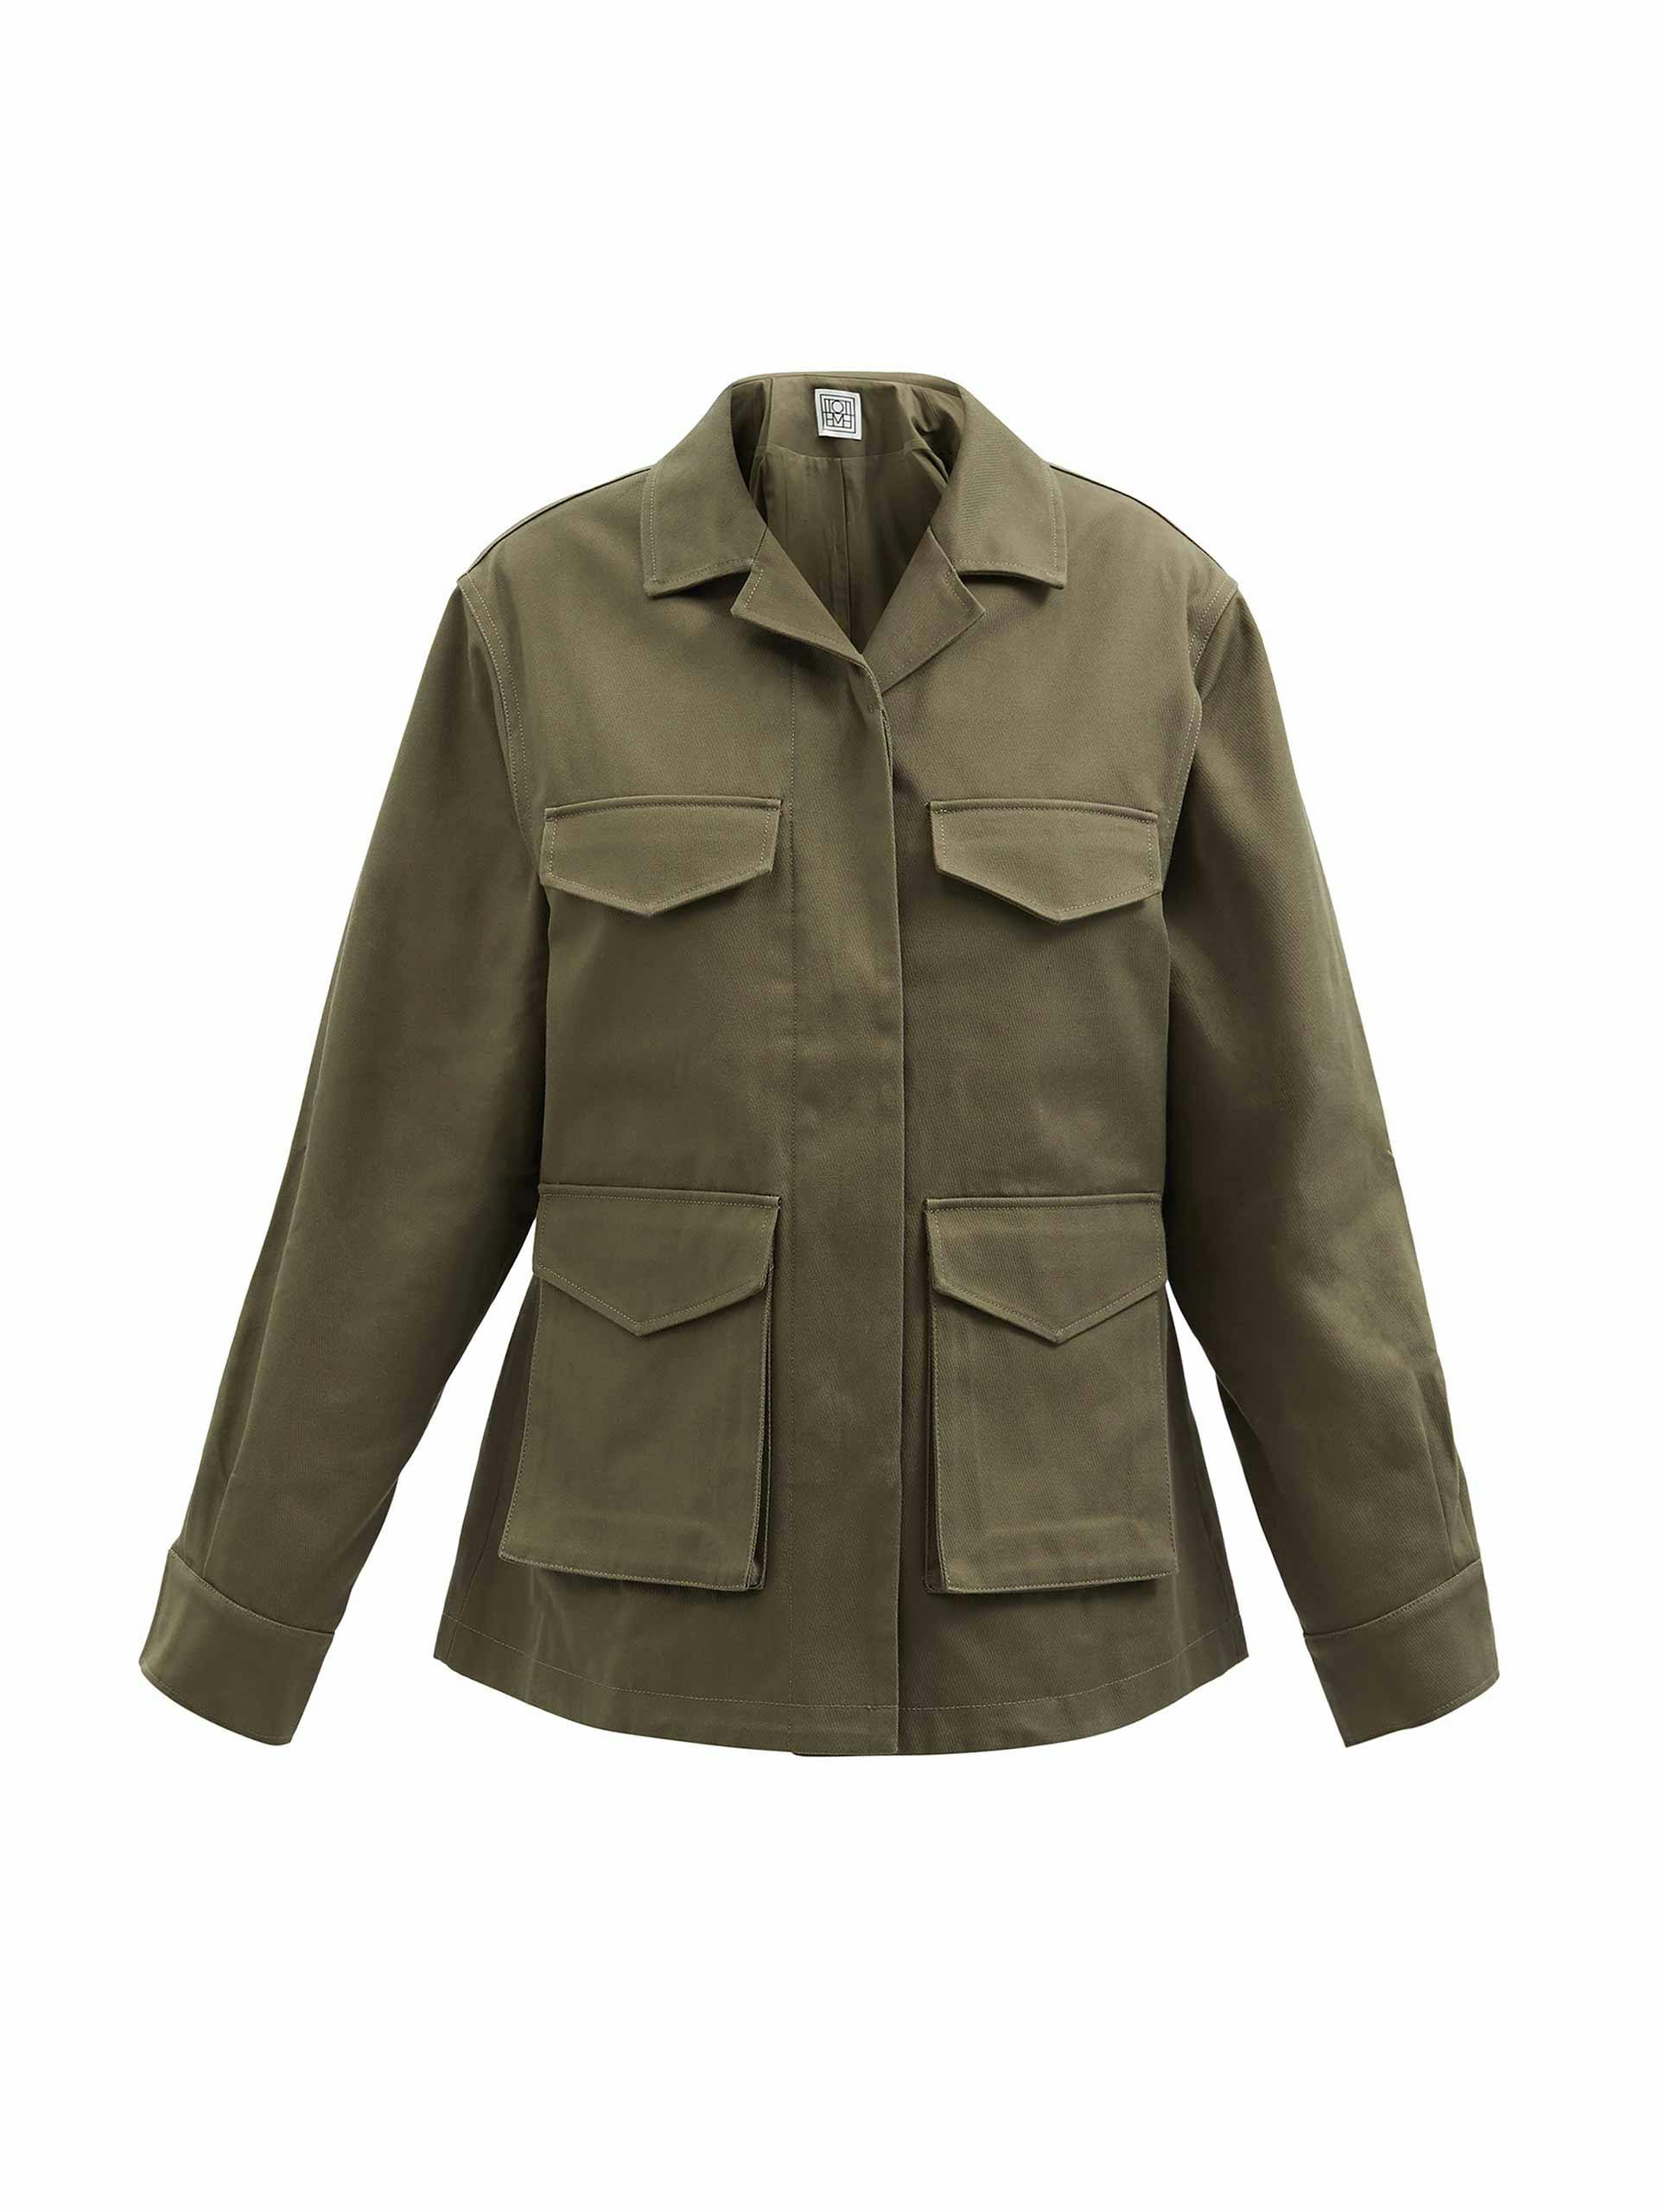 Khaki cotton-canvas cargo pocket jacket